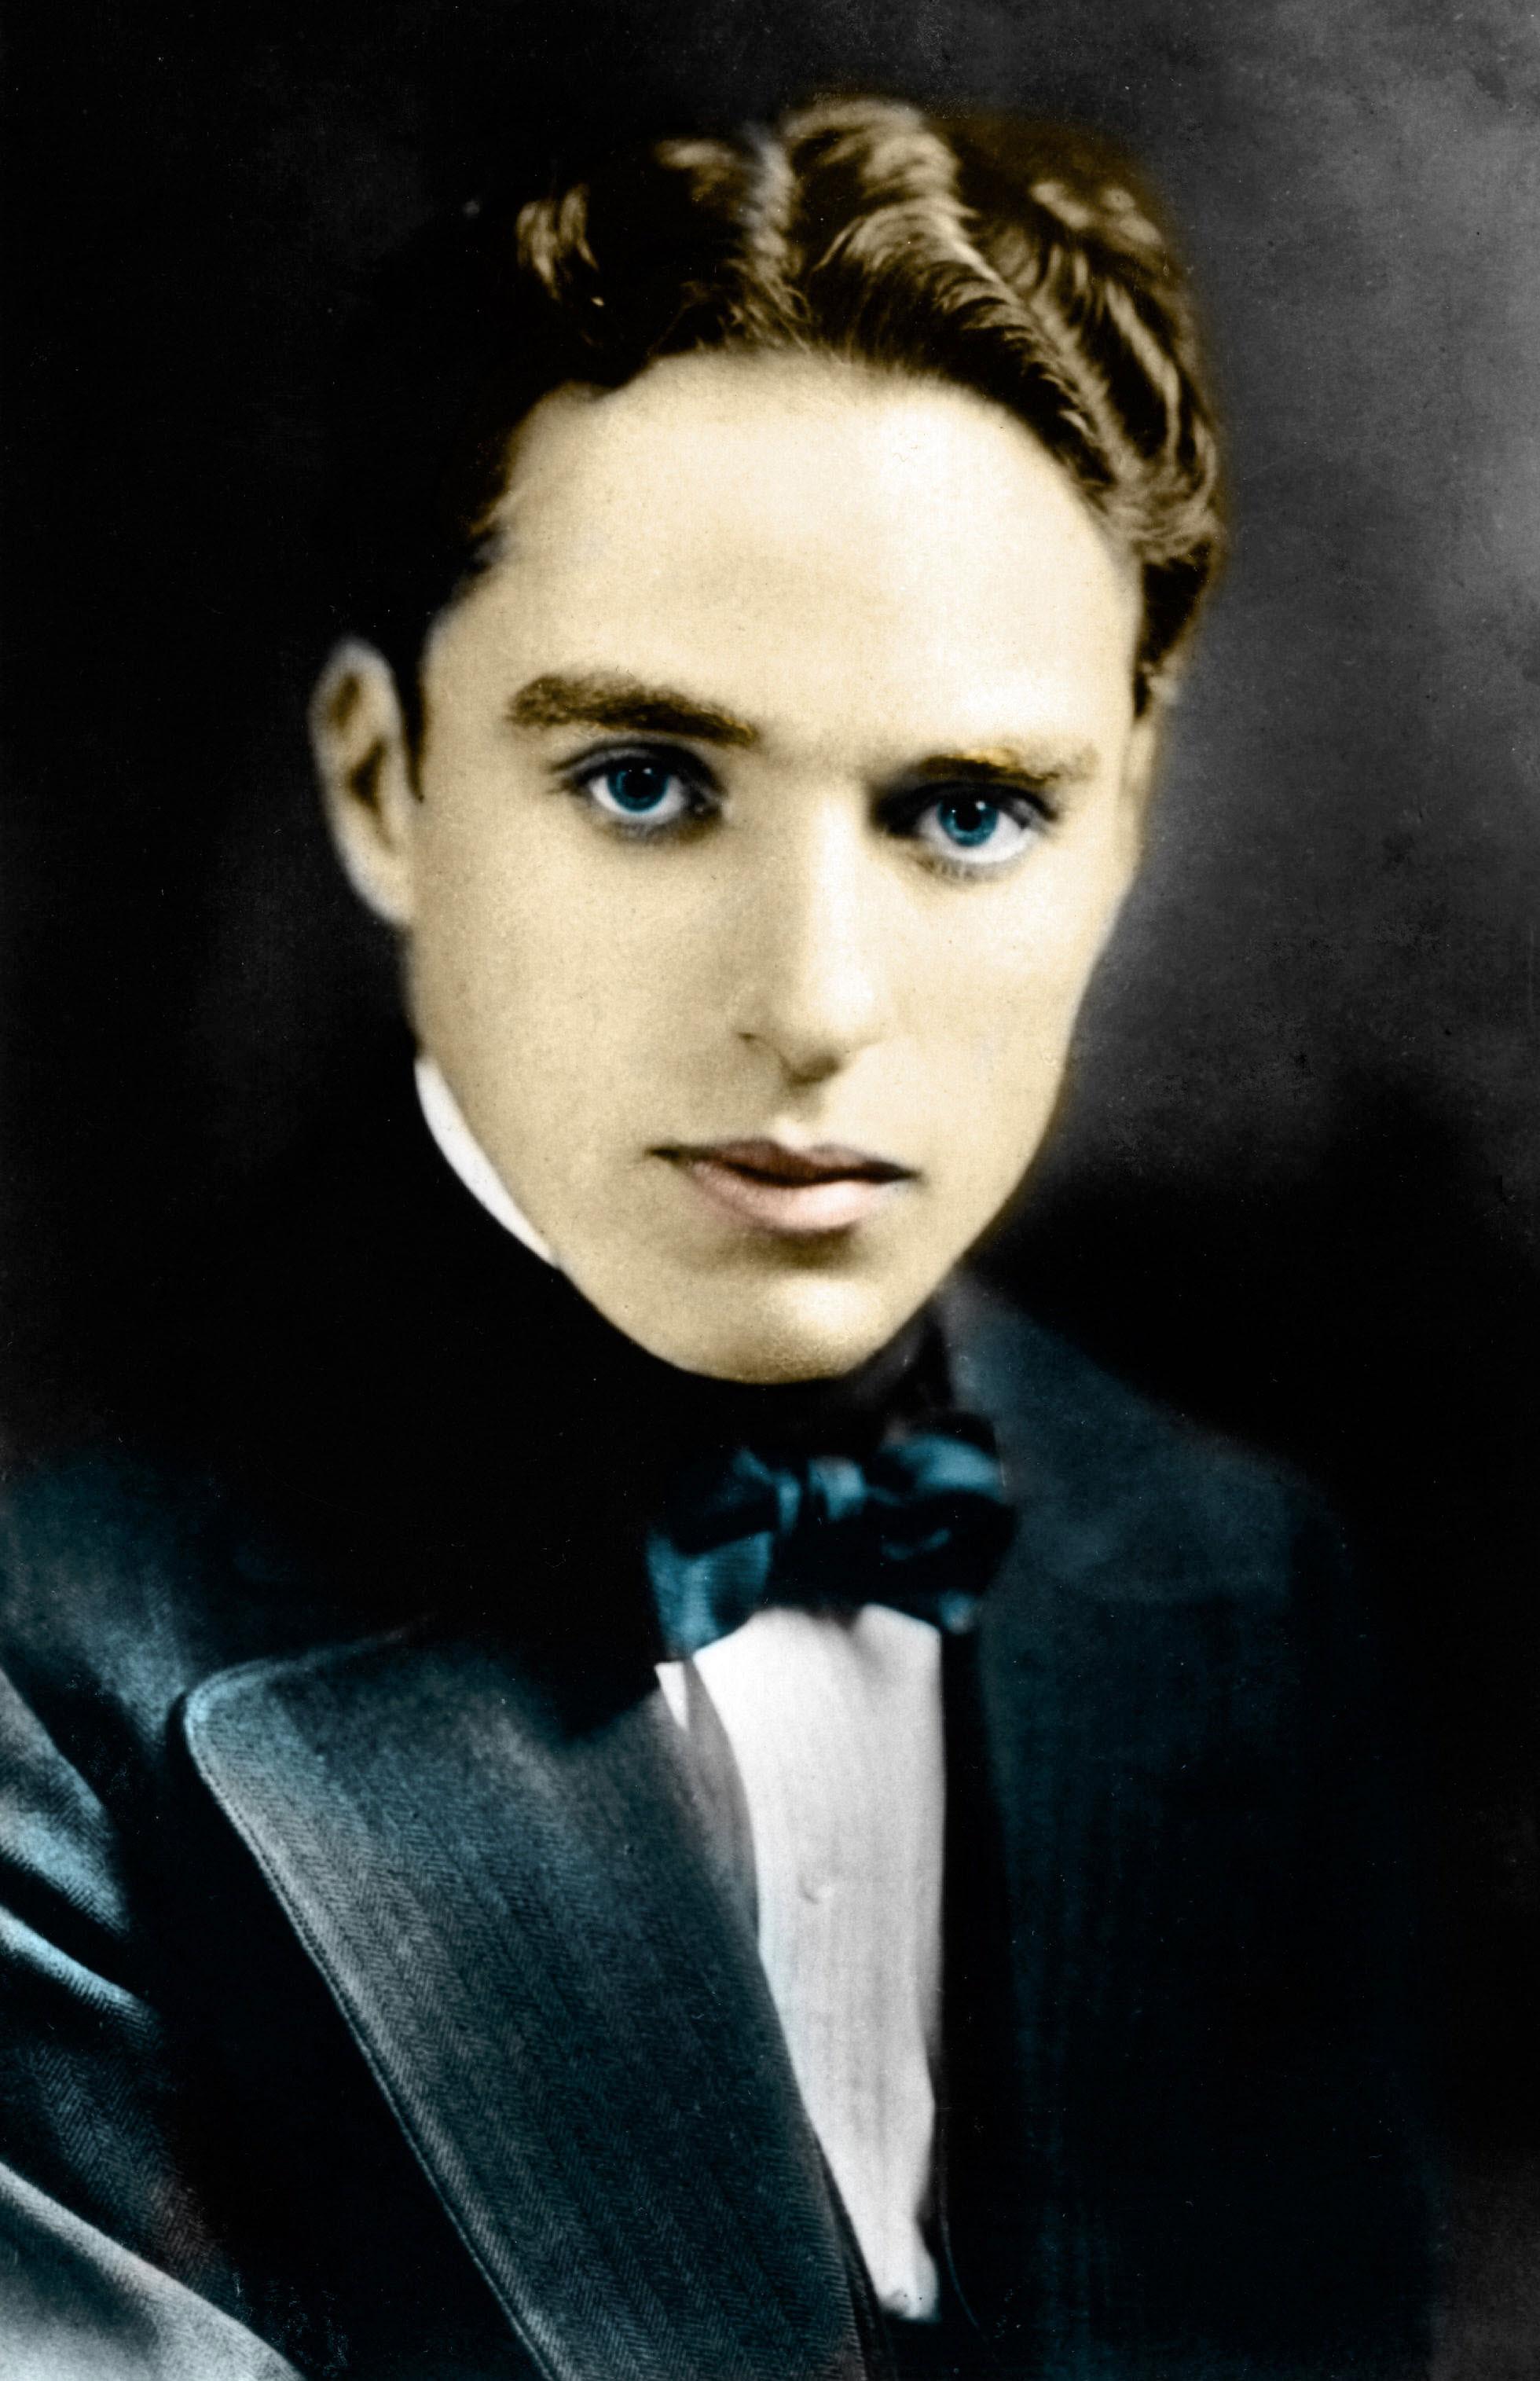 Charlie Chaplin, portrait autour de 1910 [Collection Privee ©Isadora/Leemage/afp]